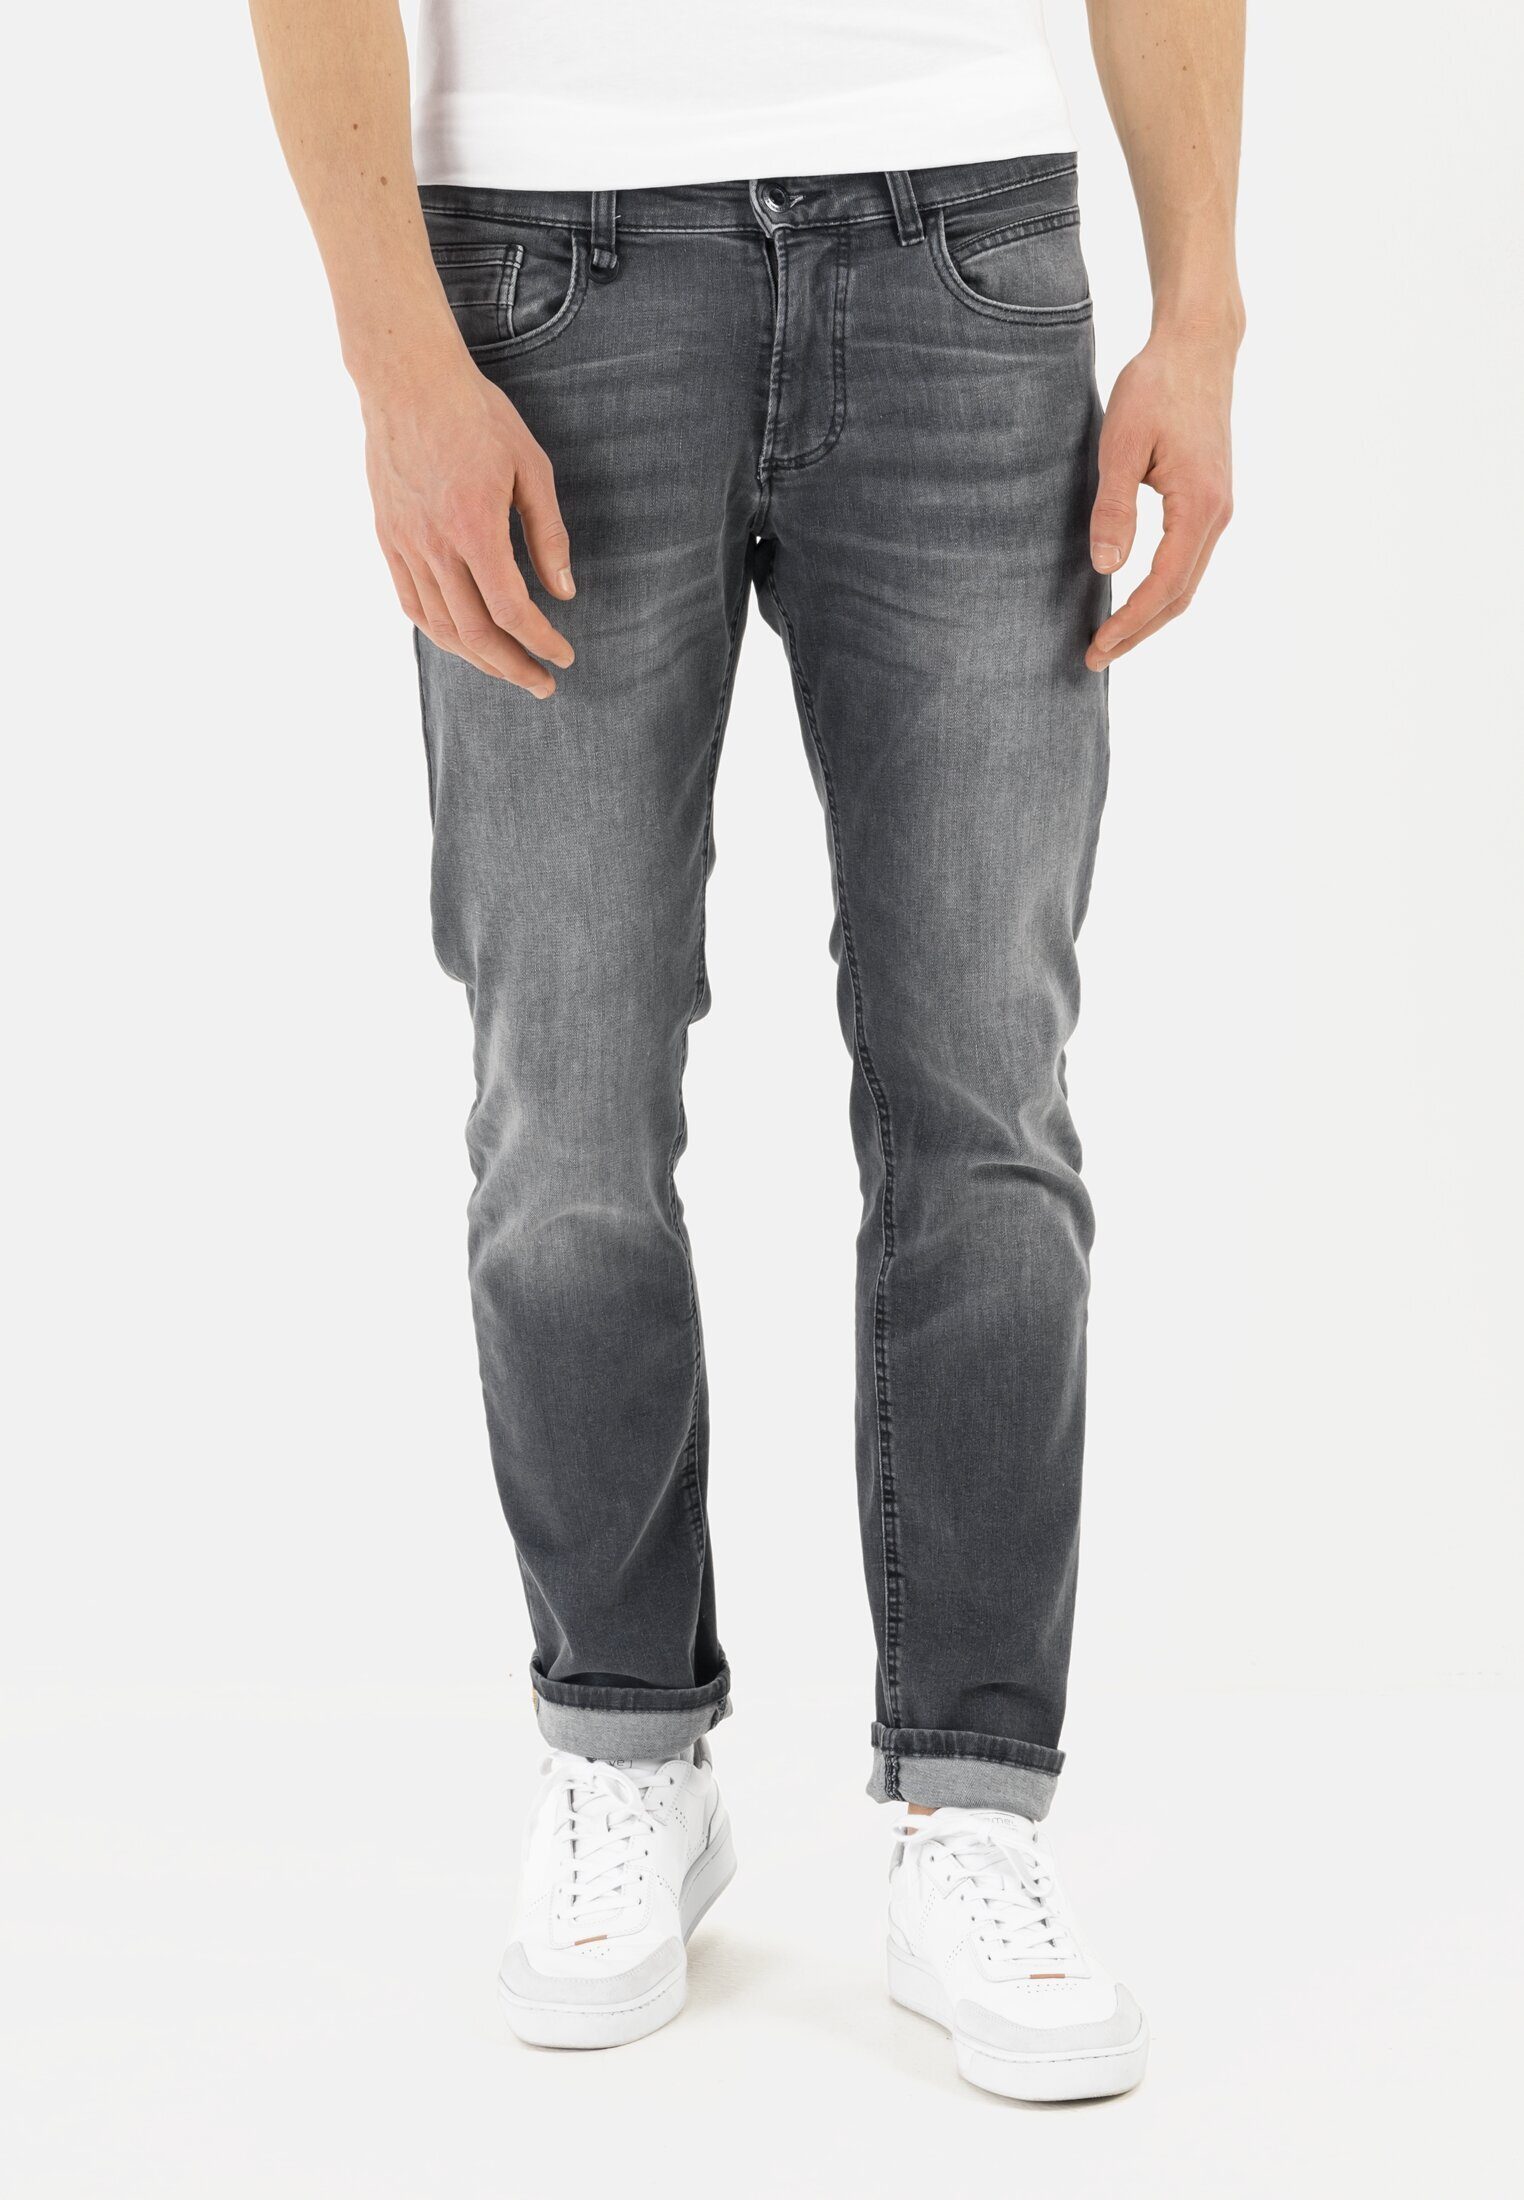 camel active 5-Pocket-Jeans »5-Pocket Denim in Regular Fit« Regular Fit  online kaufen | OTTO